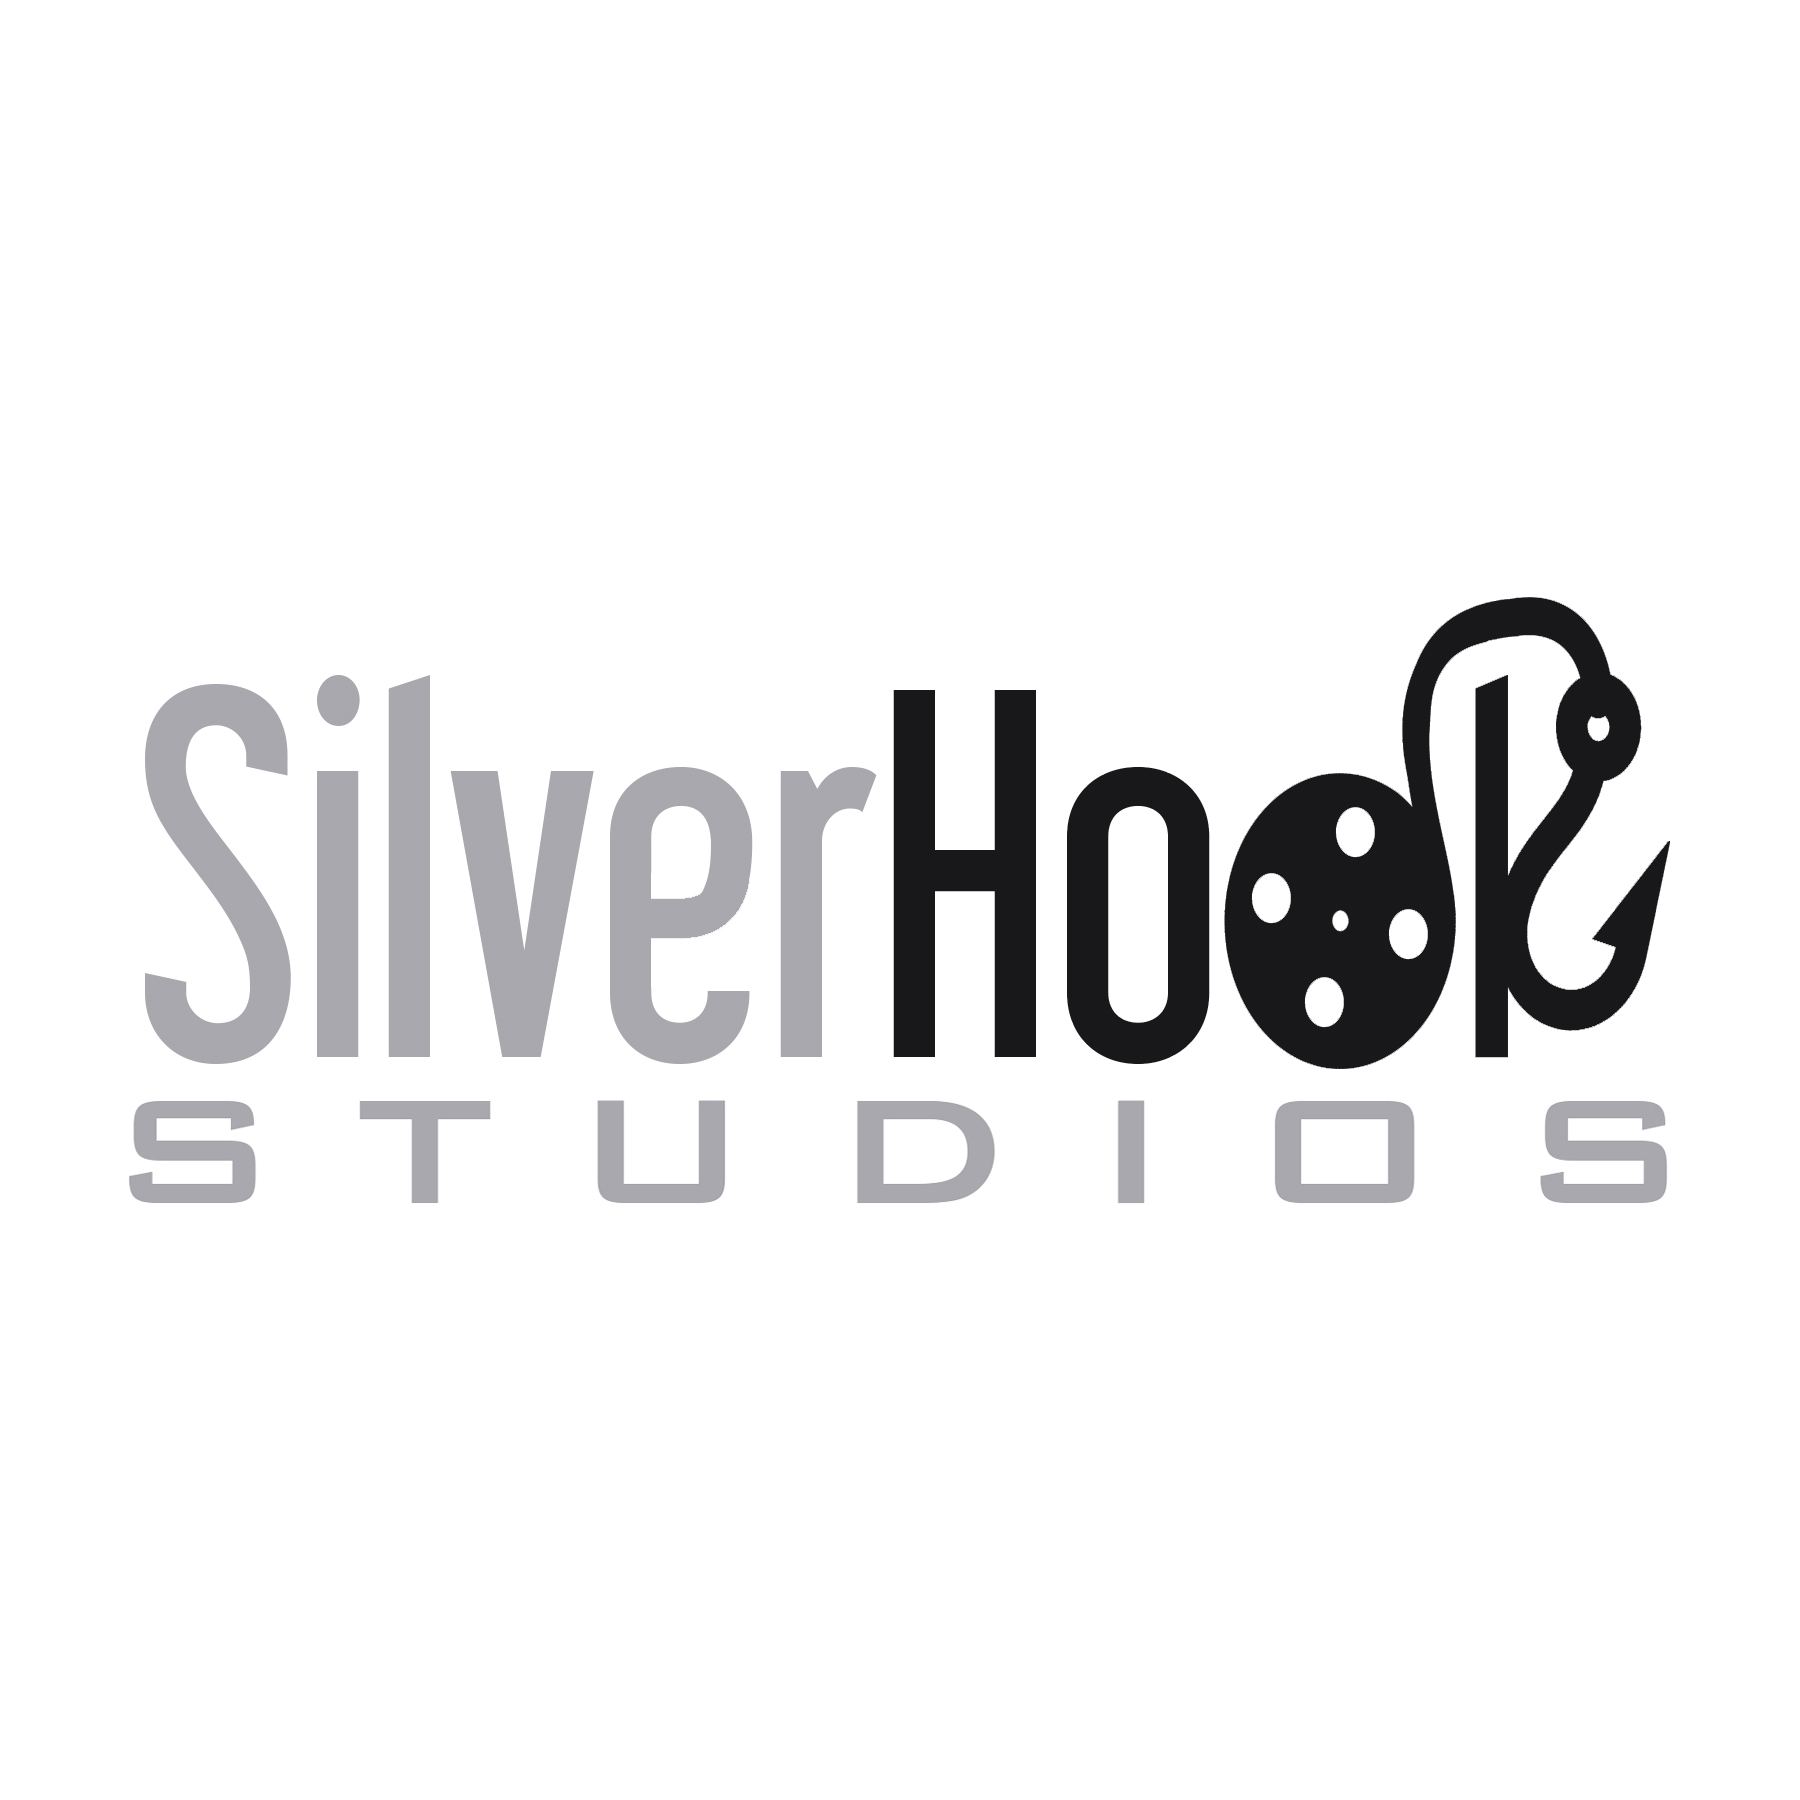 silverhookstudios Logo